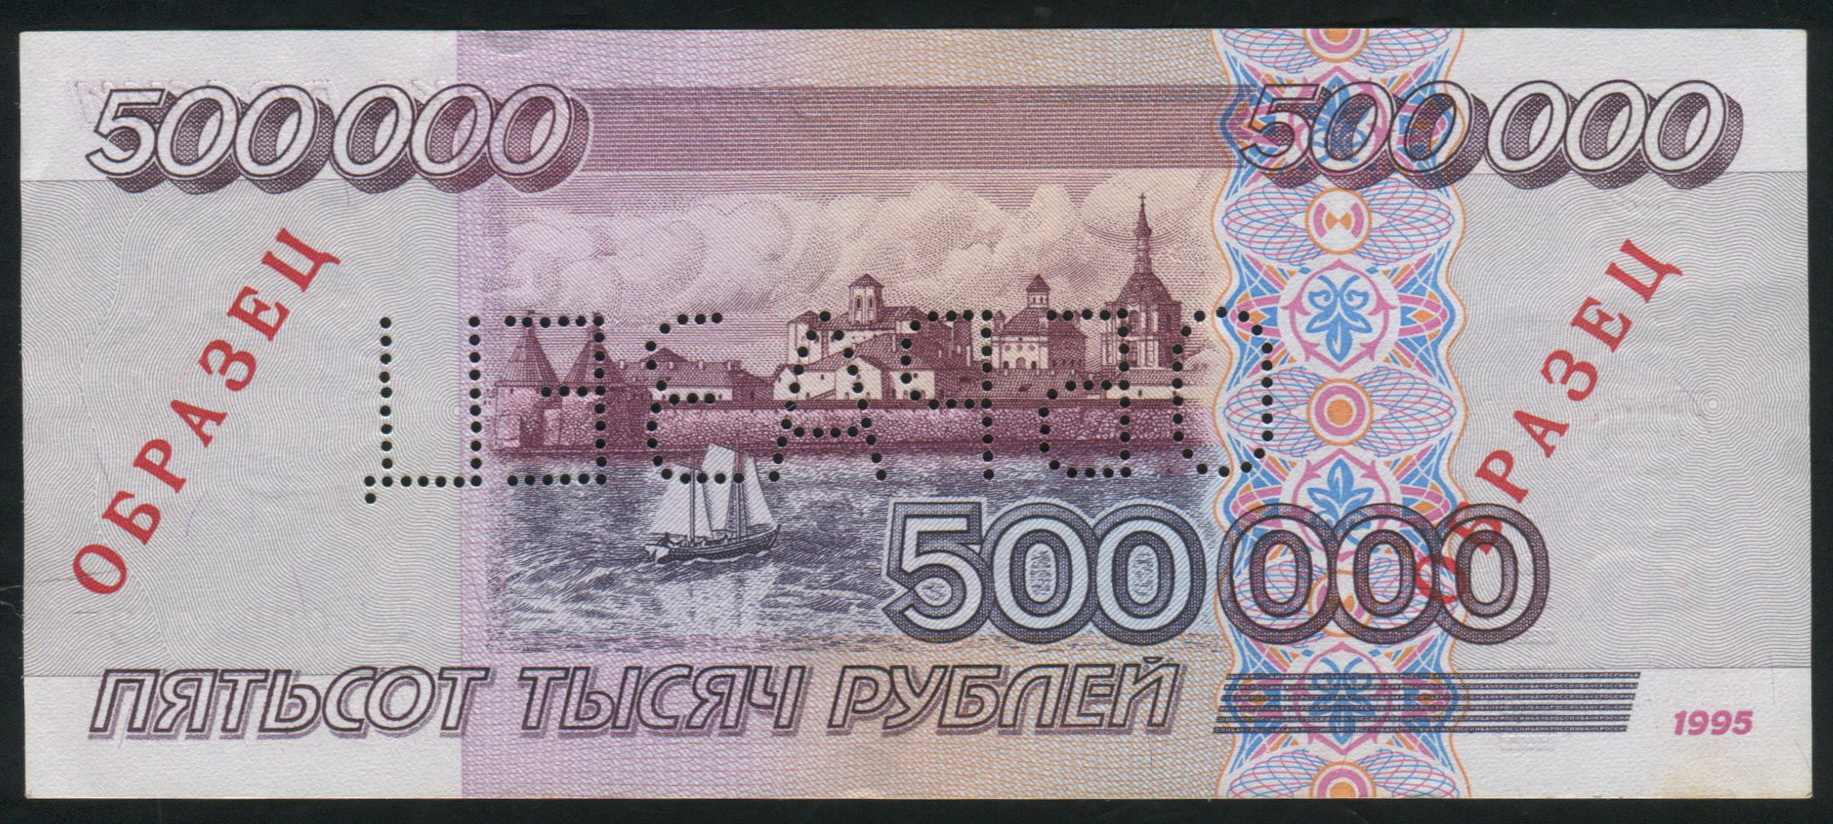 500000 рублей в сумах. 500000 Рублей. Купюра 500000 рублей. 500000 Рублей образец. Деньги 1995 года.